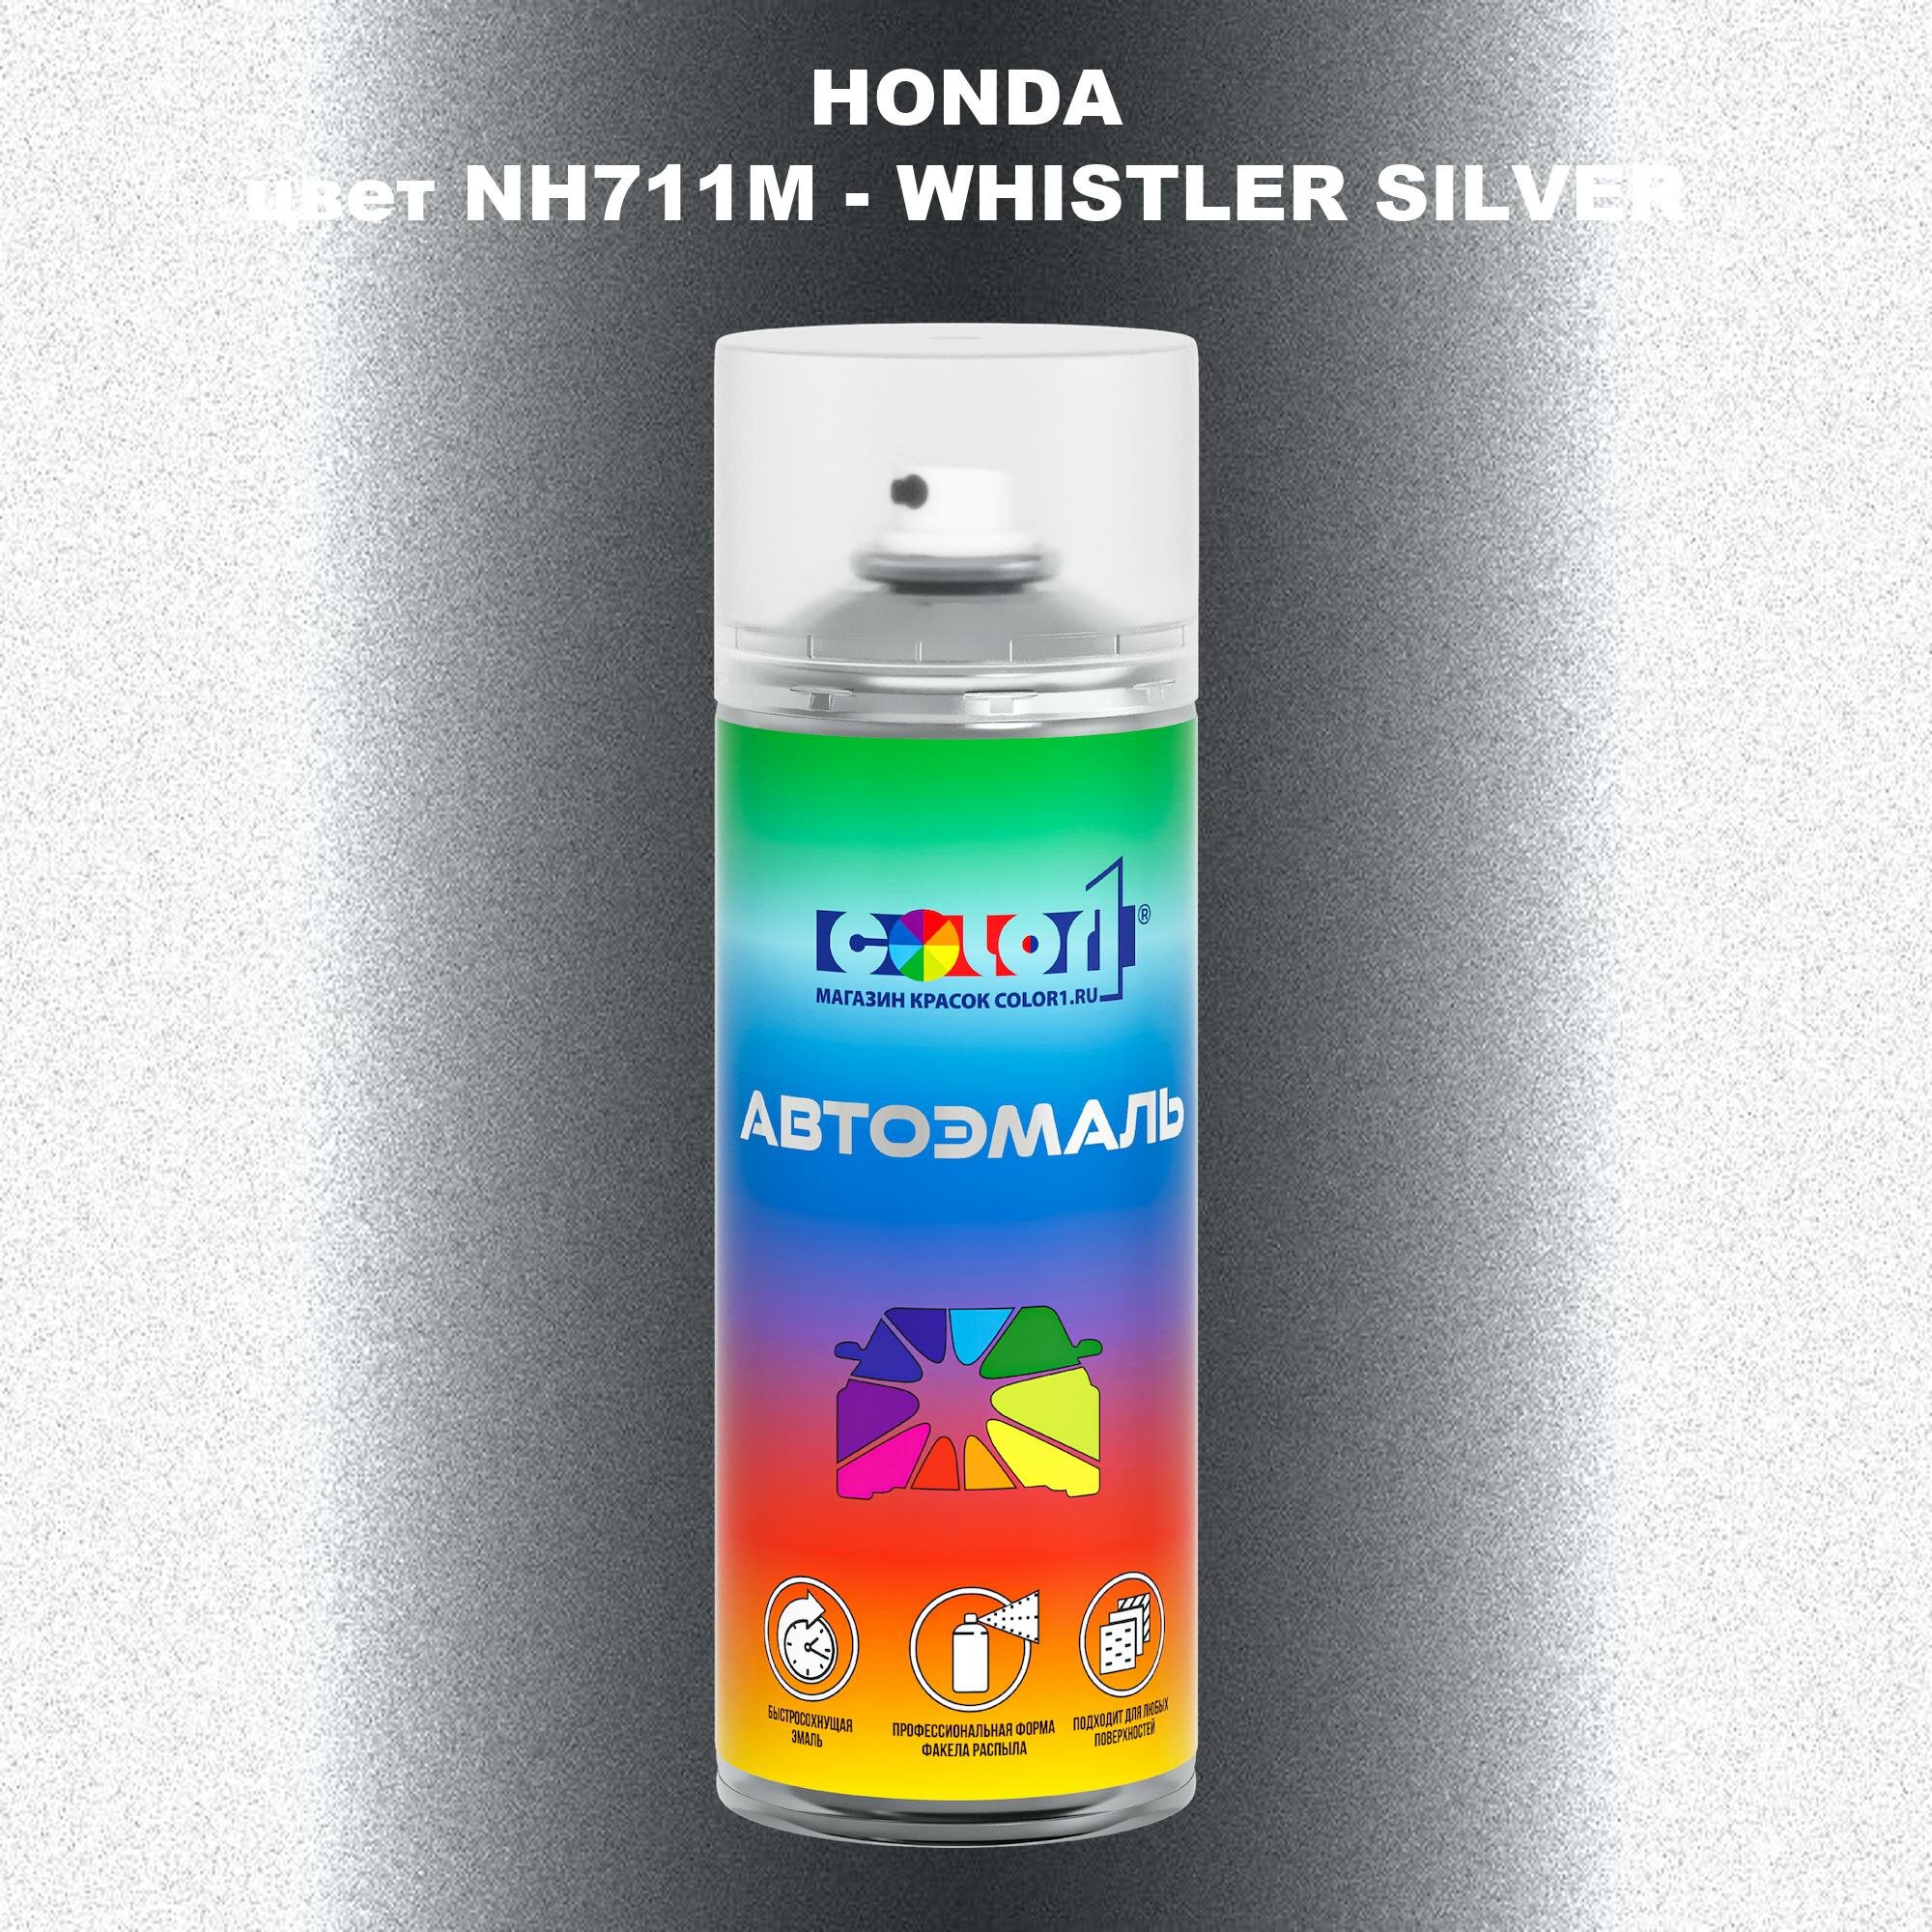 Аэрозольная краска COLOR1 для HONDA, цвет NH711M - WHISTLER SILVER